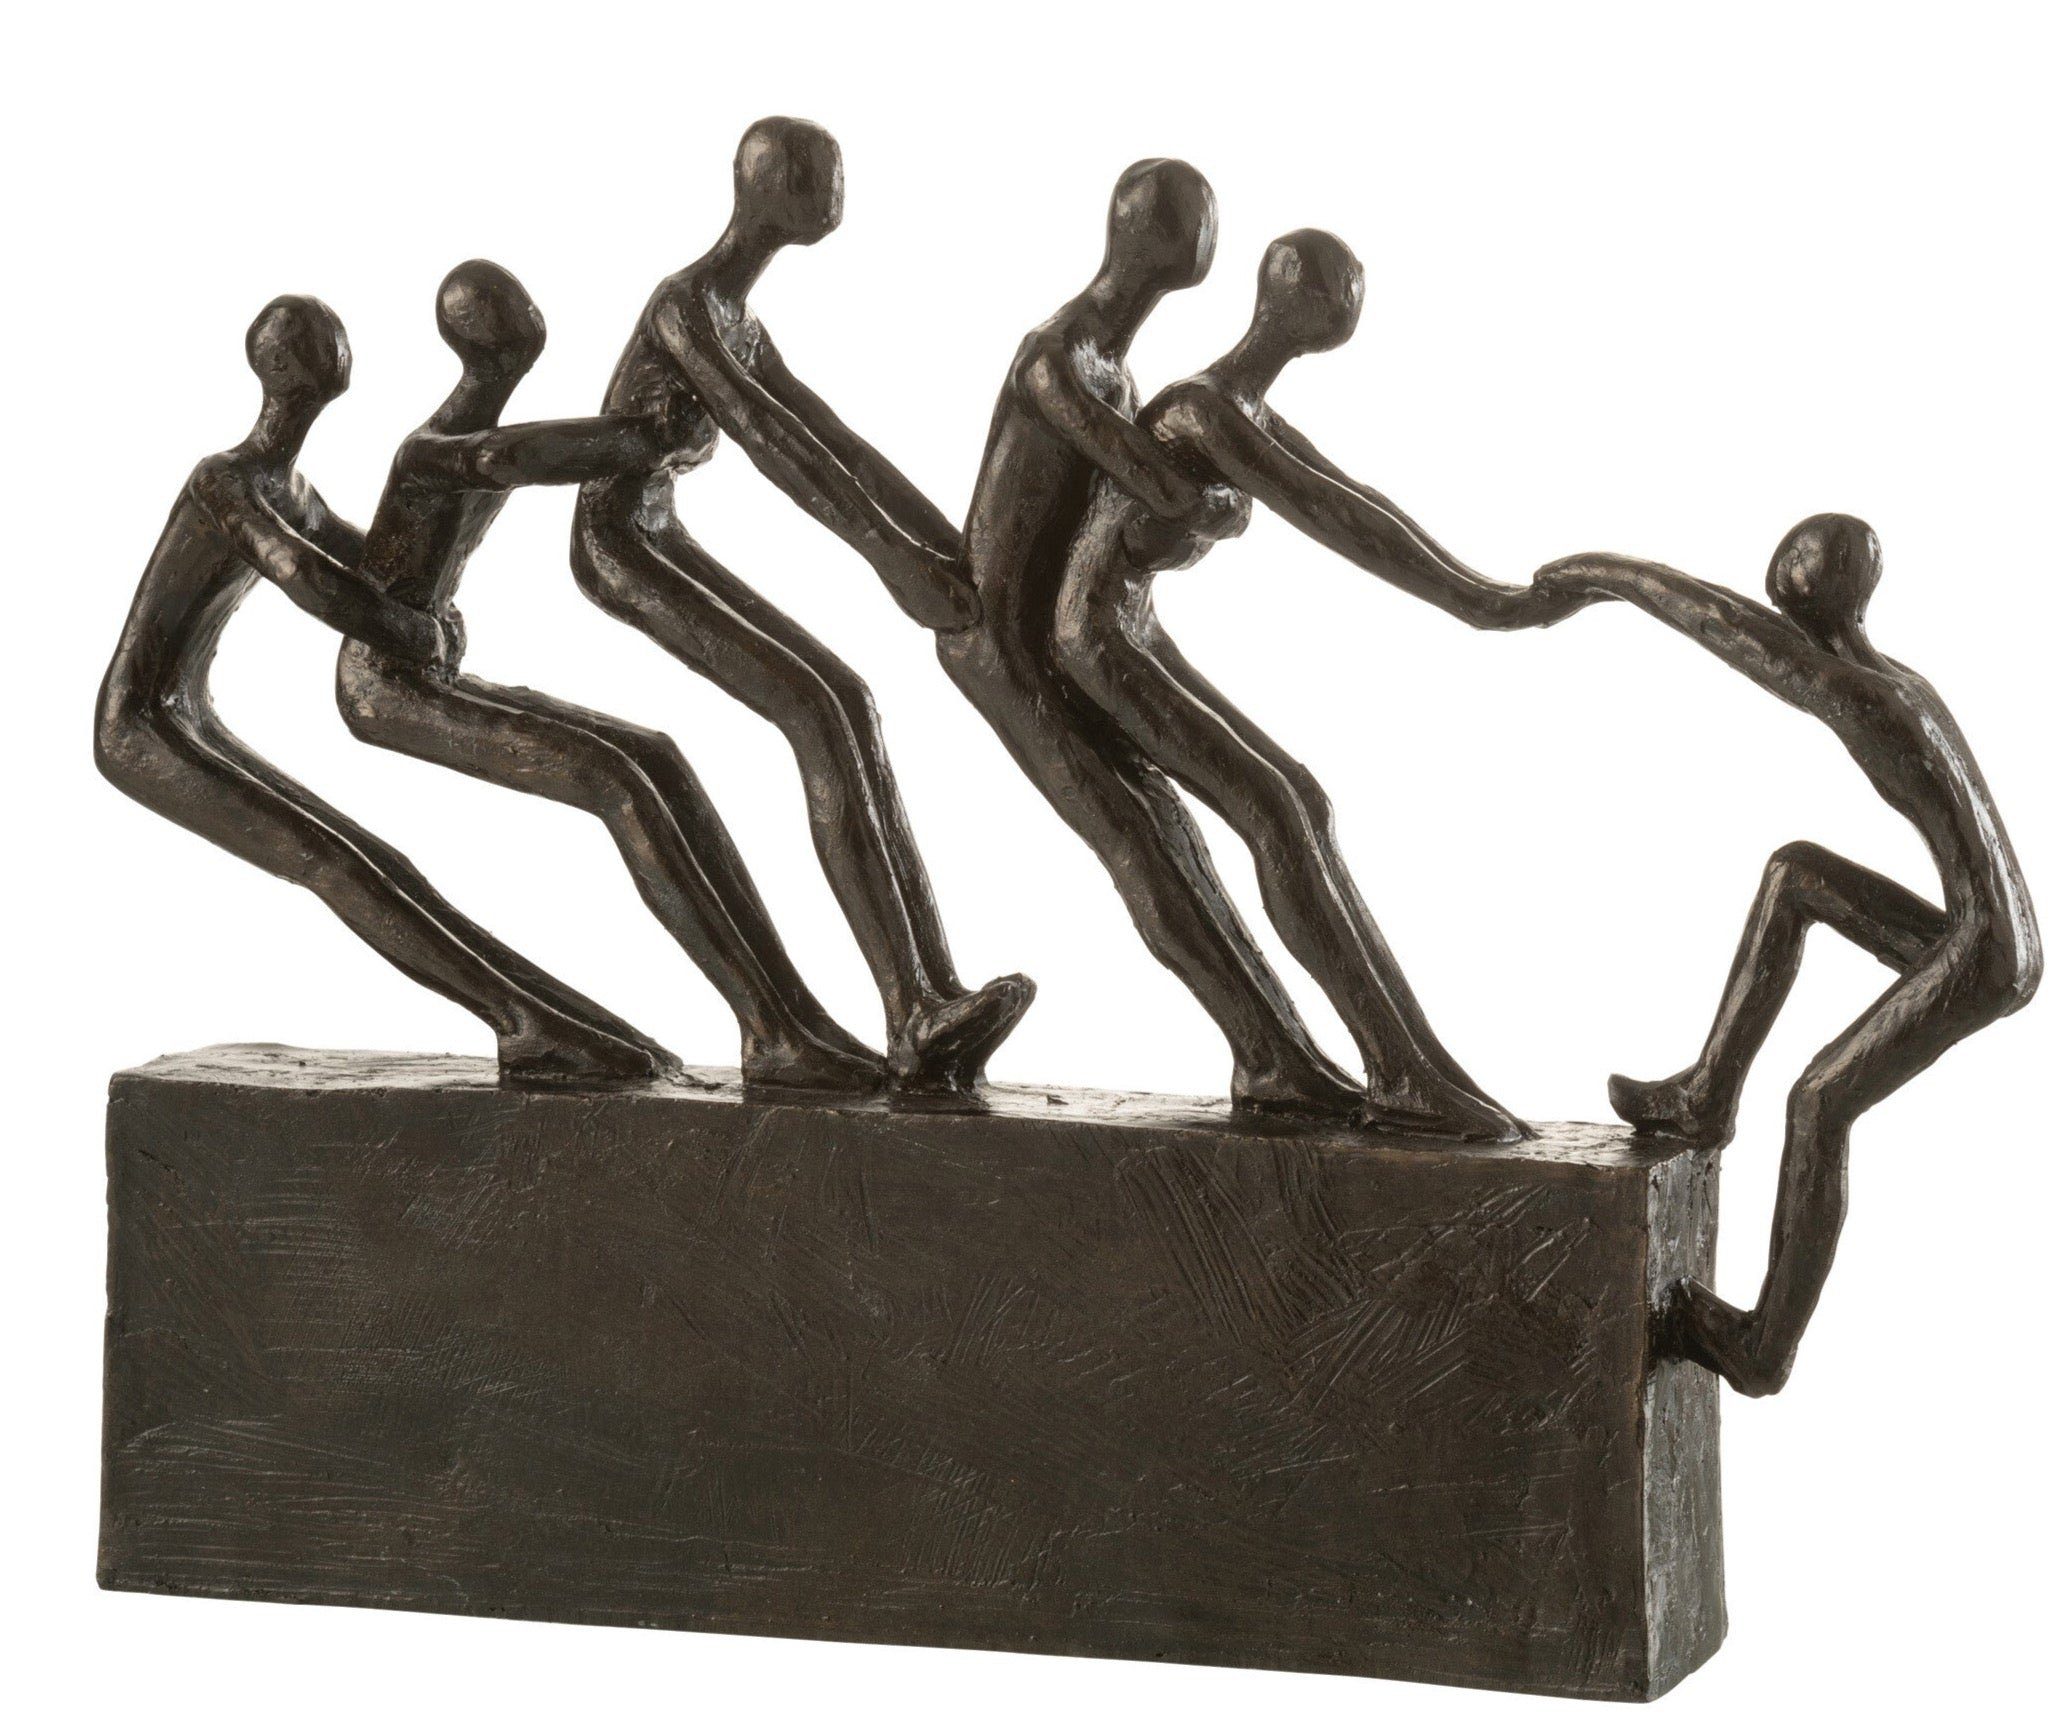 MF Dekoobjekt Figur Skulptur "Teamwork freunde halten zusammen" Geschenkidee Dekorat